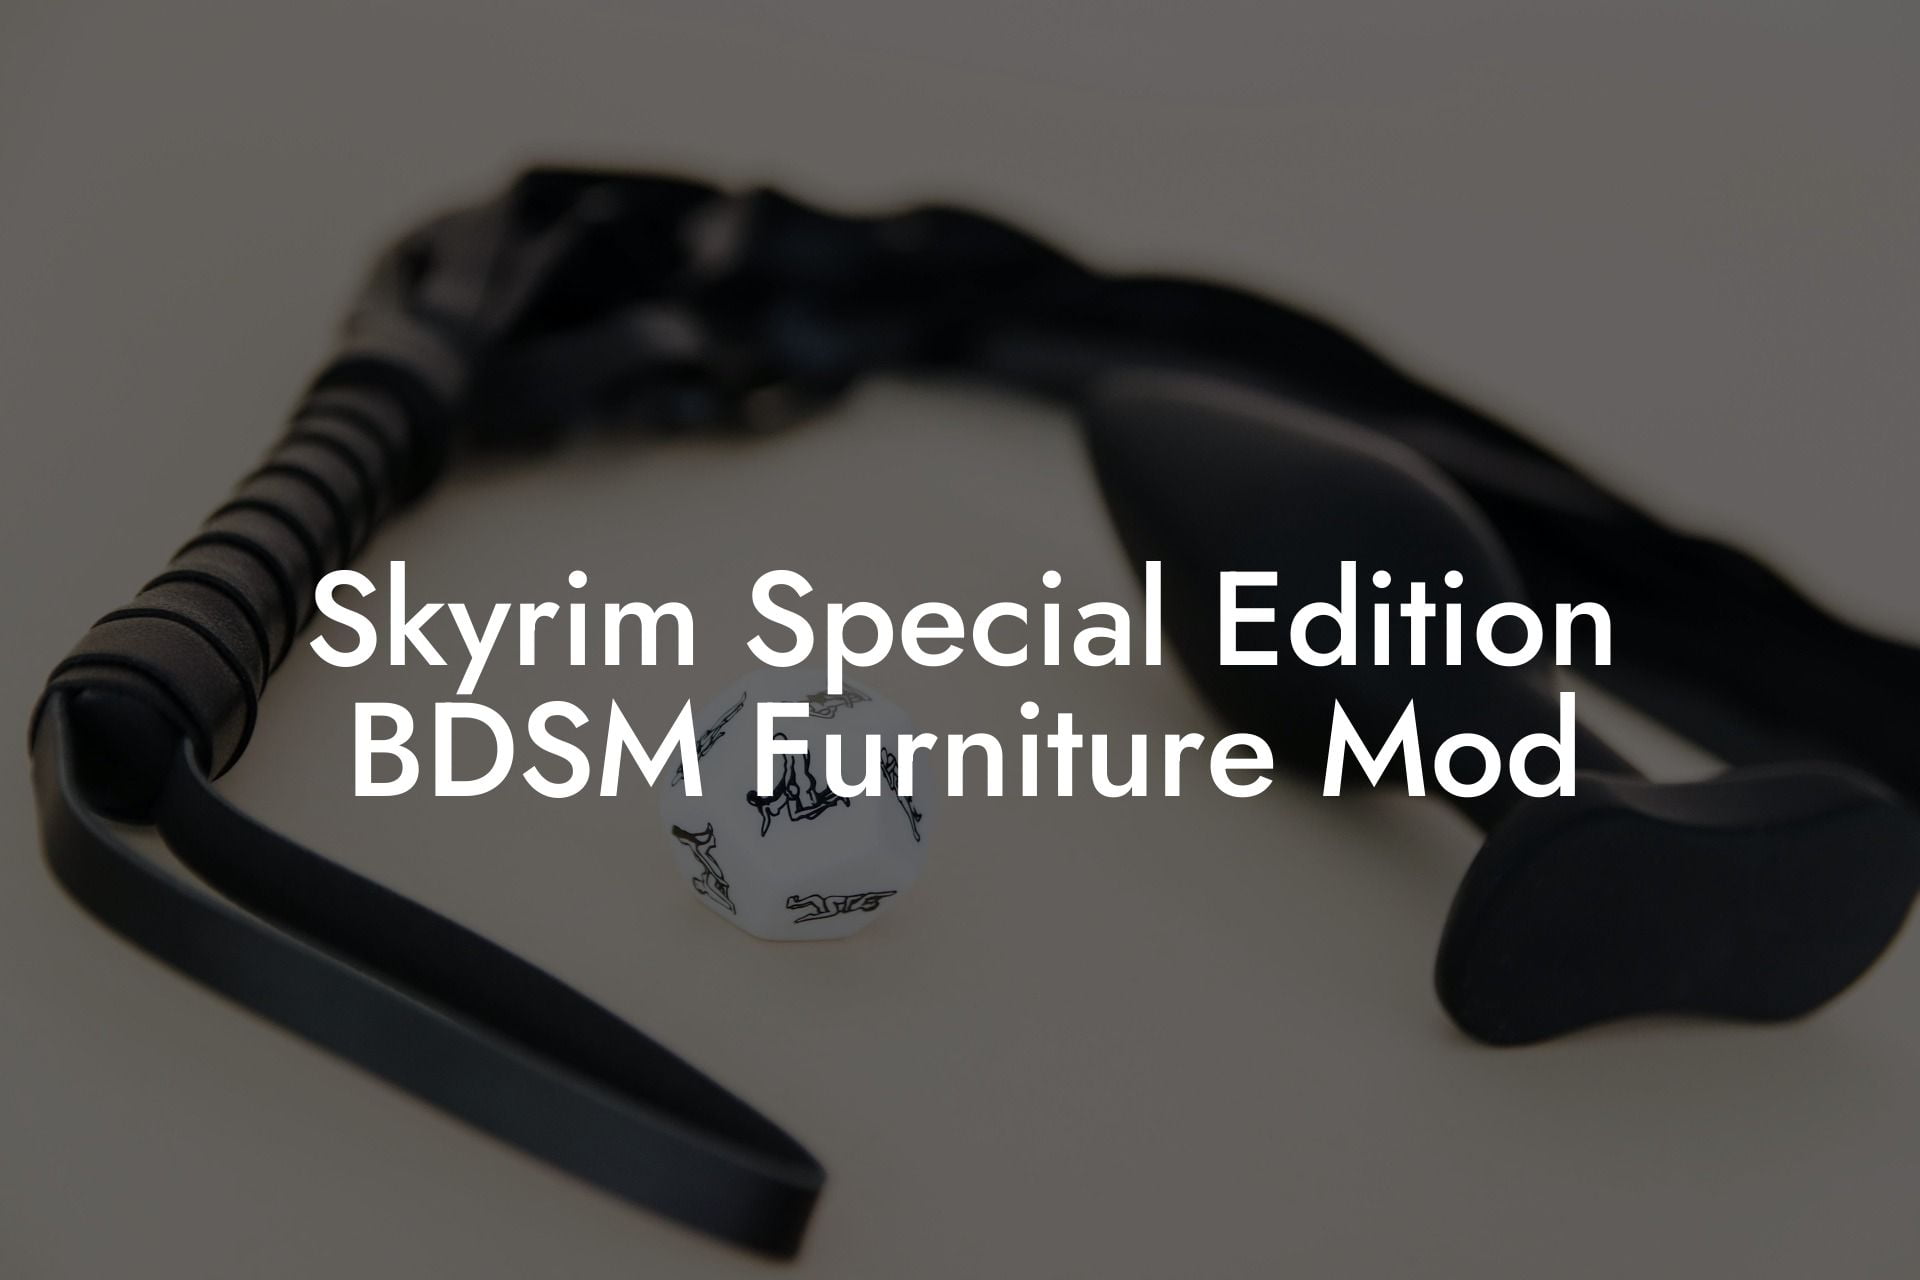 Skyrim Special Edition BDSM Furniture Mod